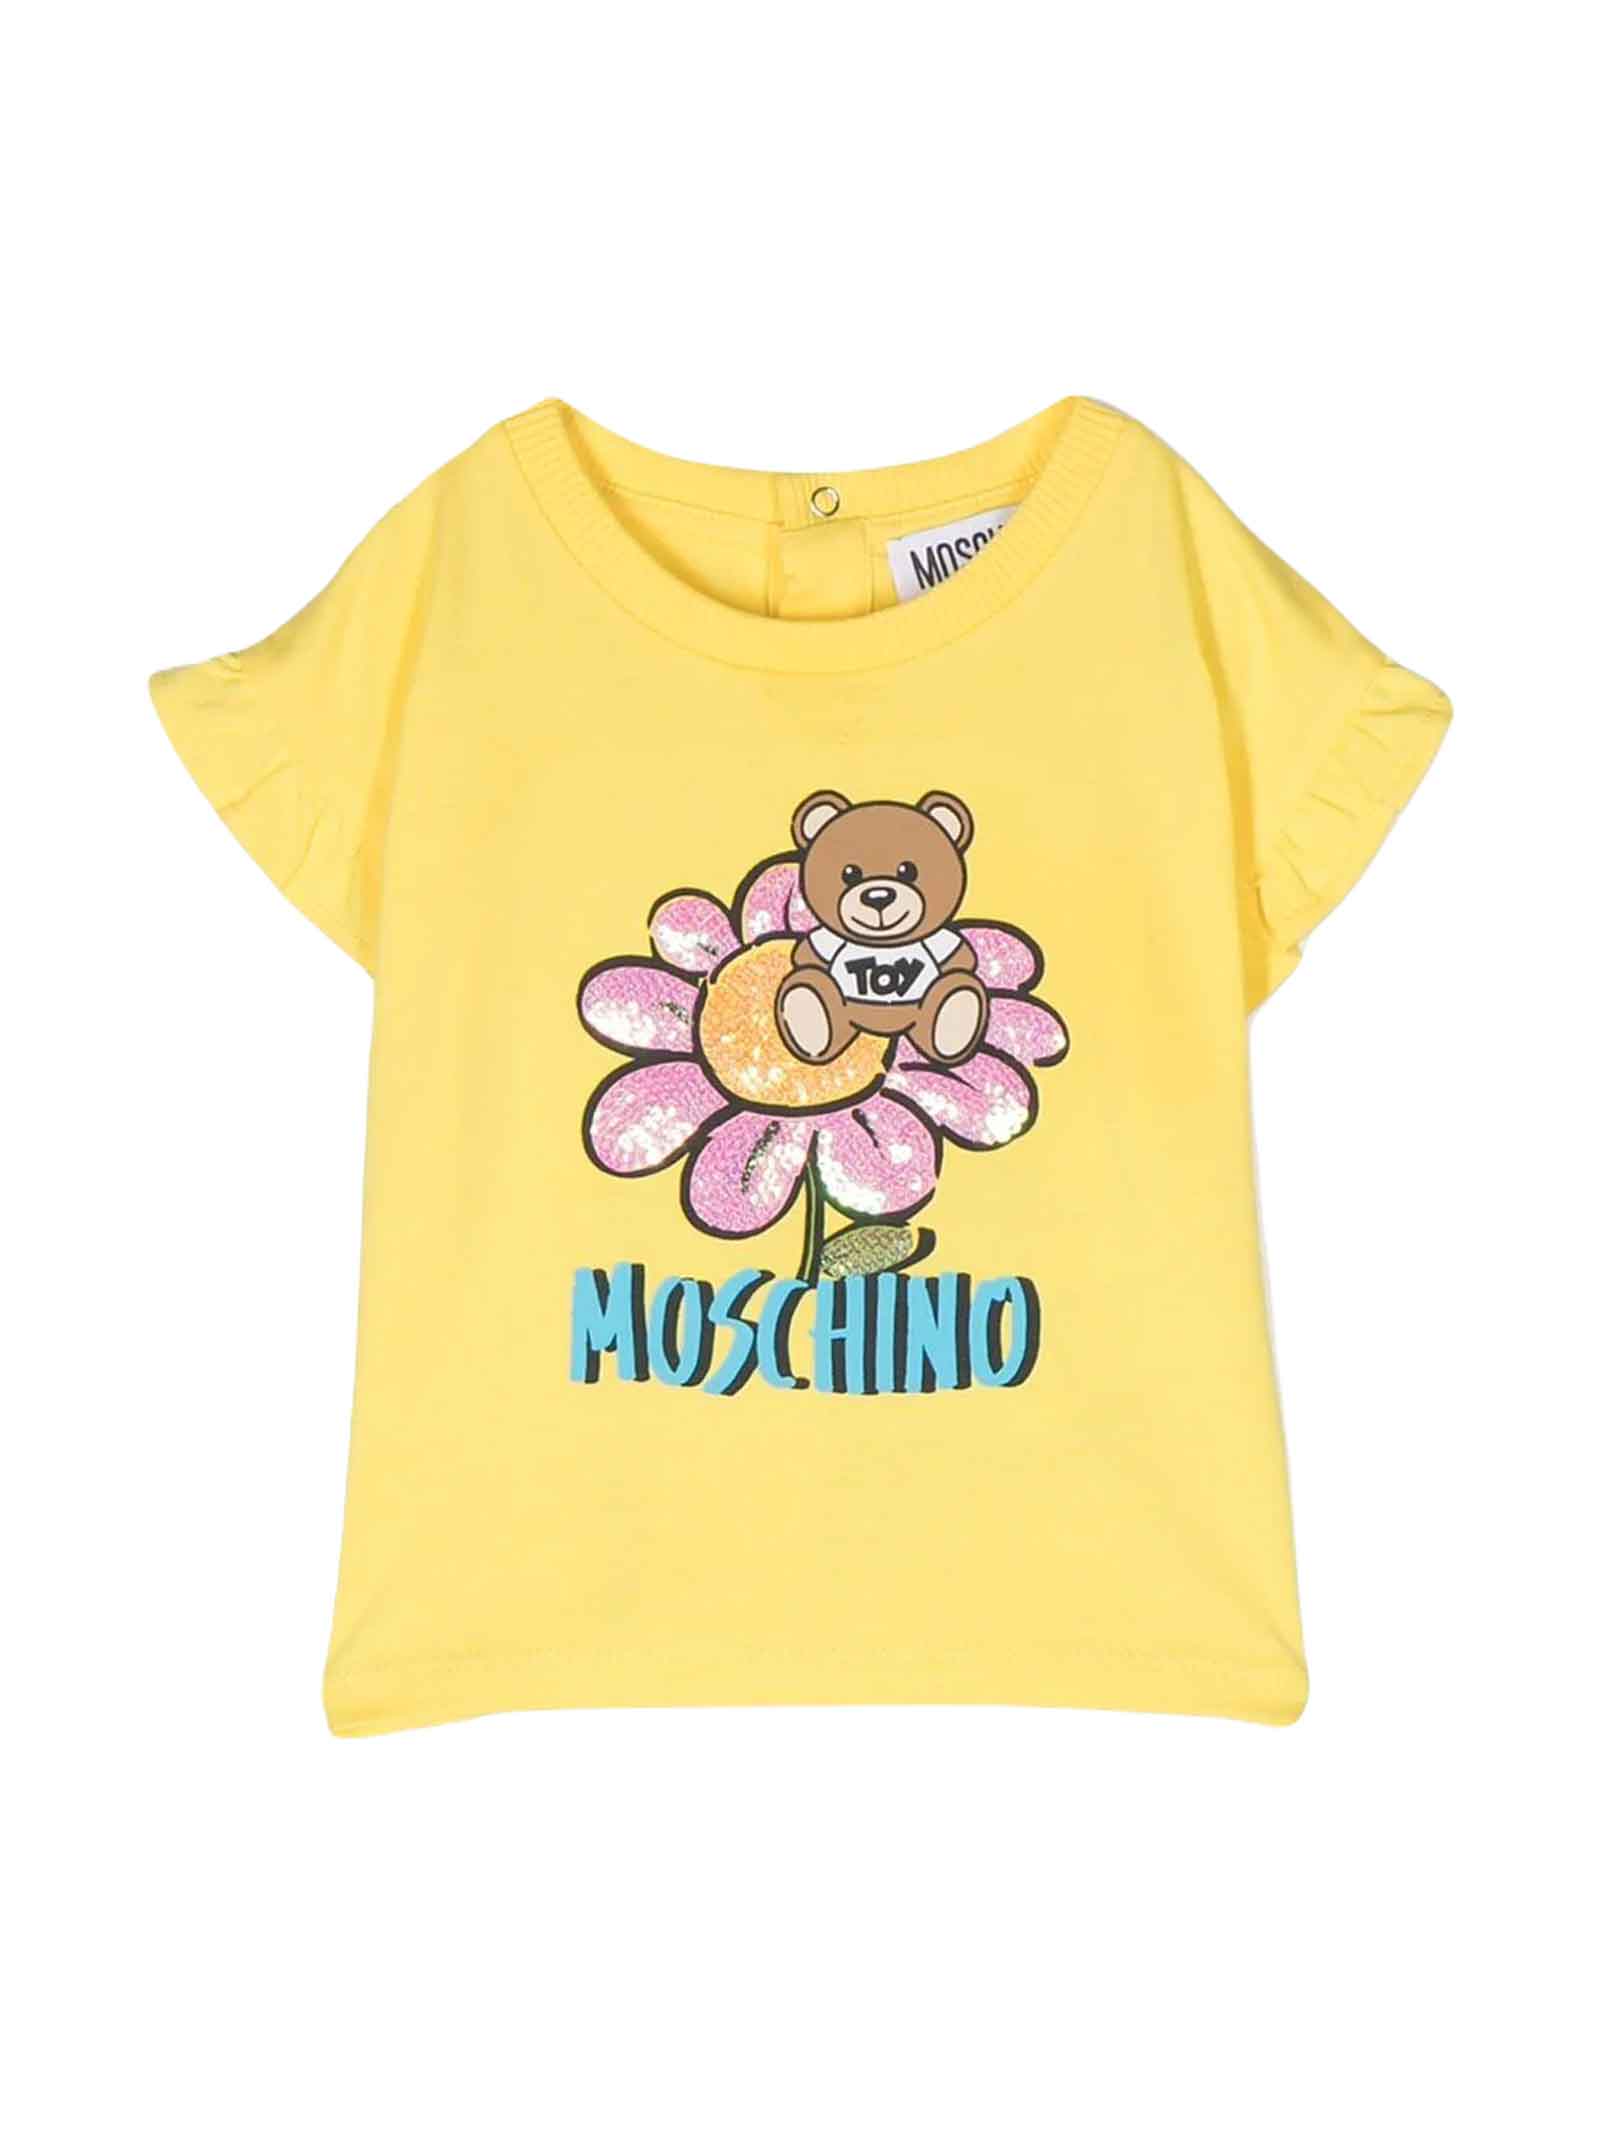 MOSCHINO YELLOW T-SHIRT BABY GIRL